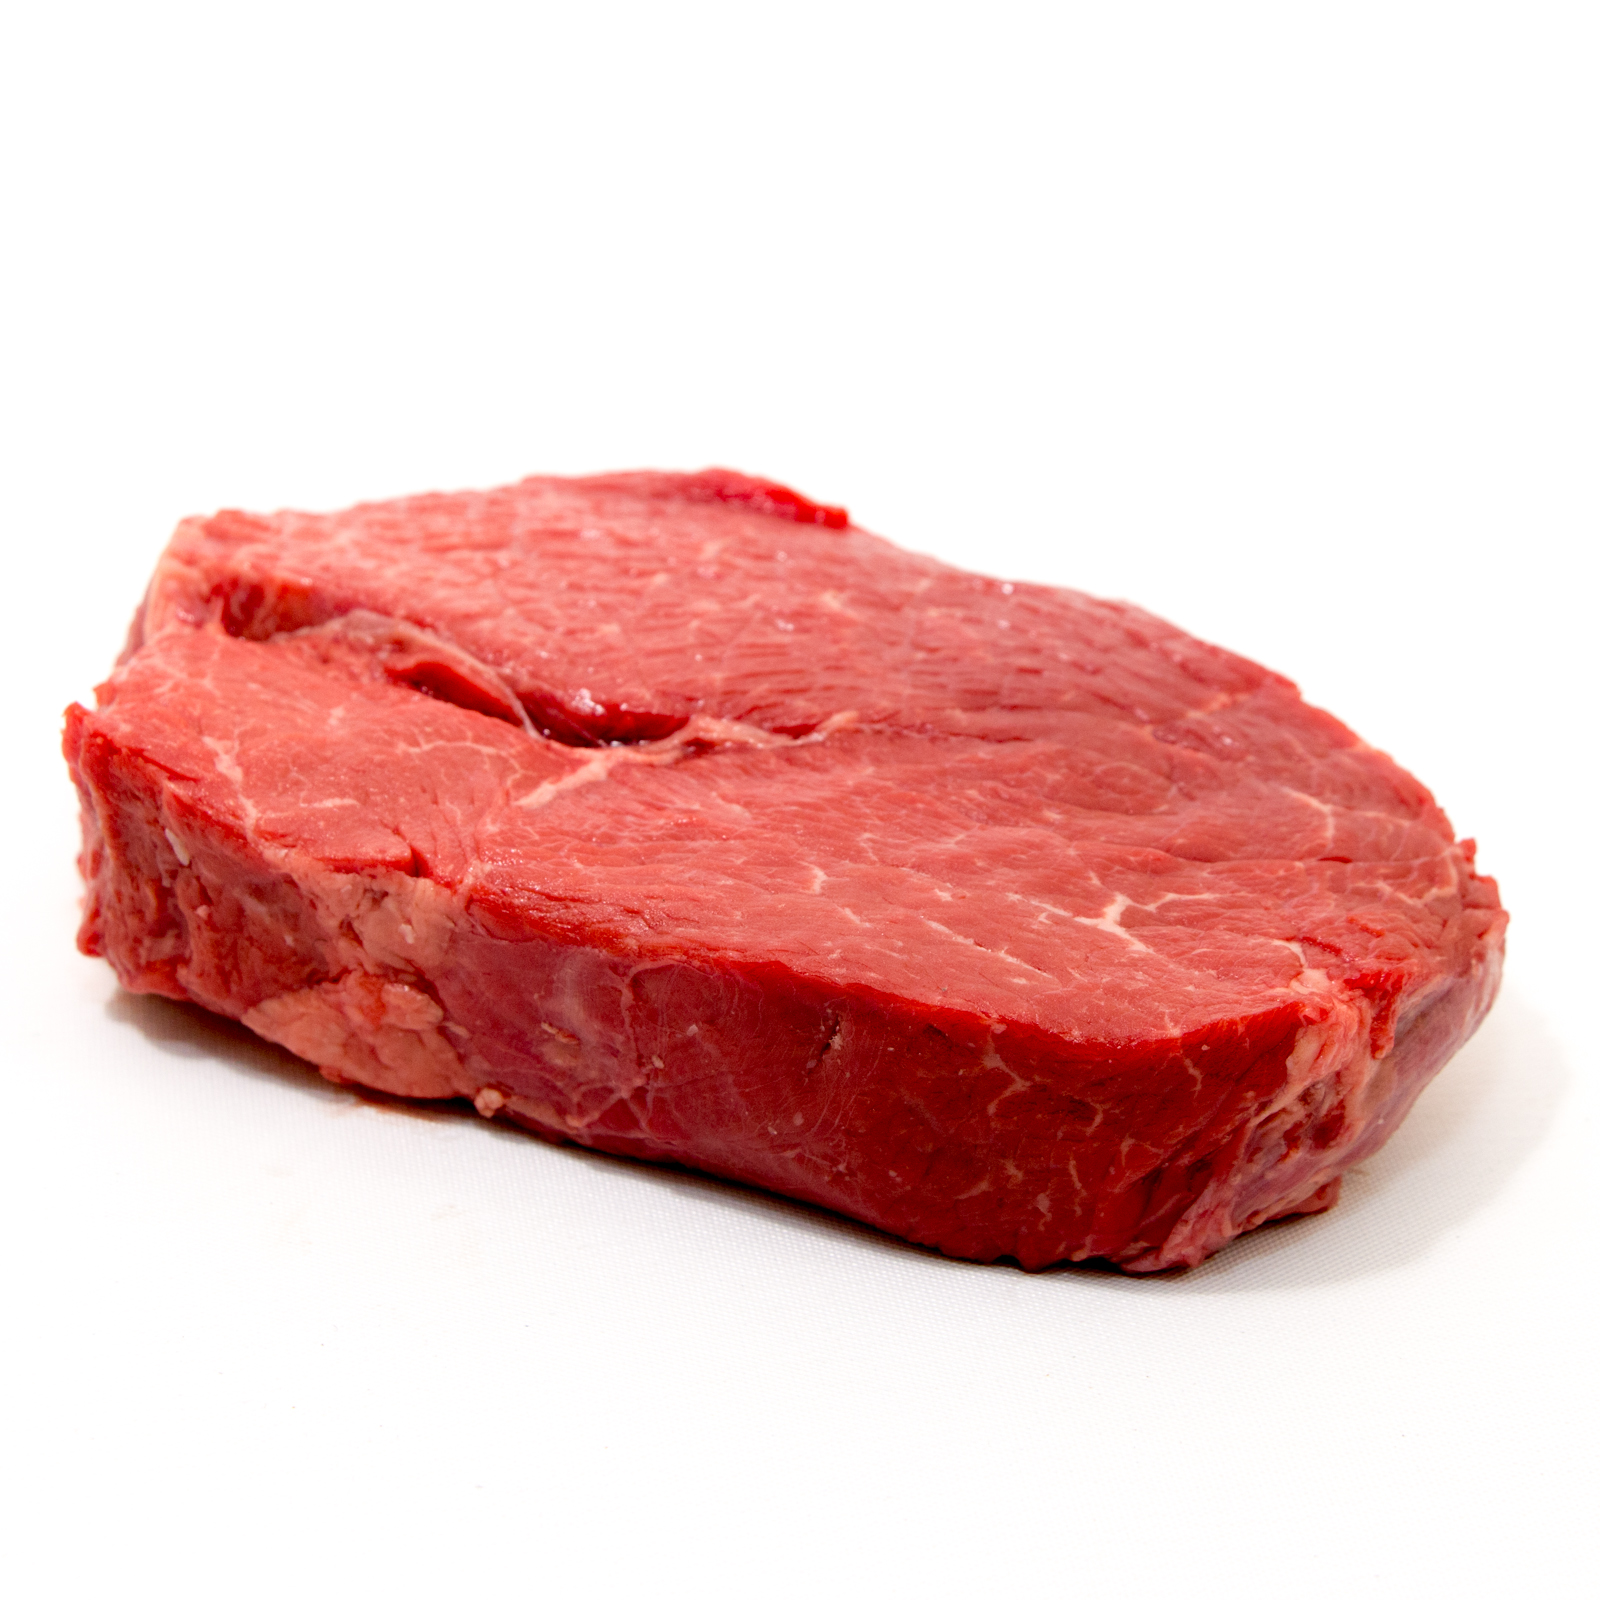 Mengenal Bagian-Bagian Daging Sapi (Steak)